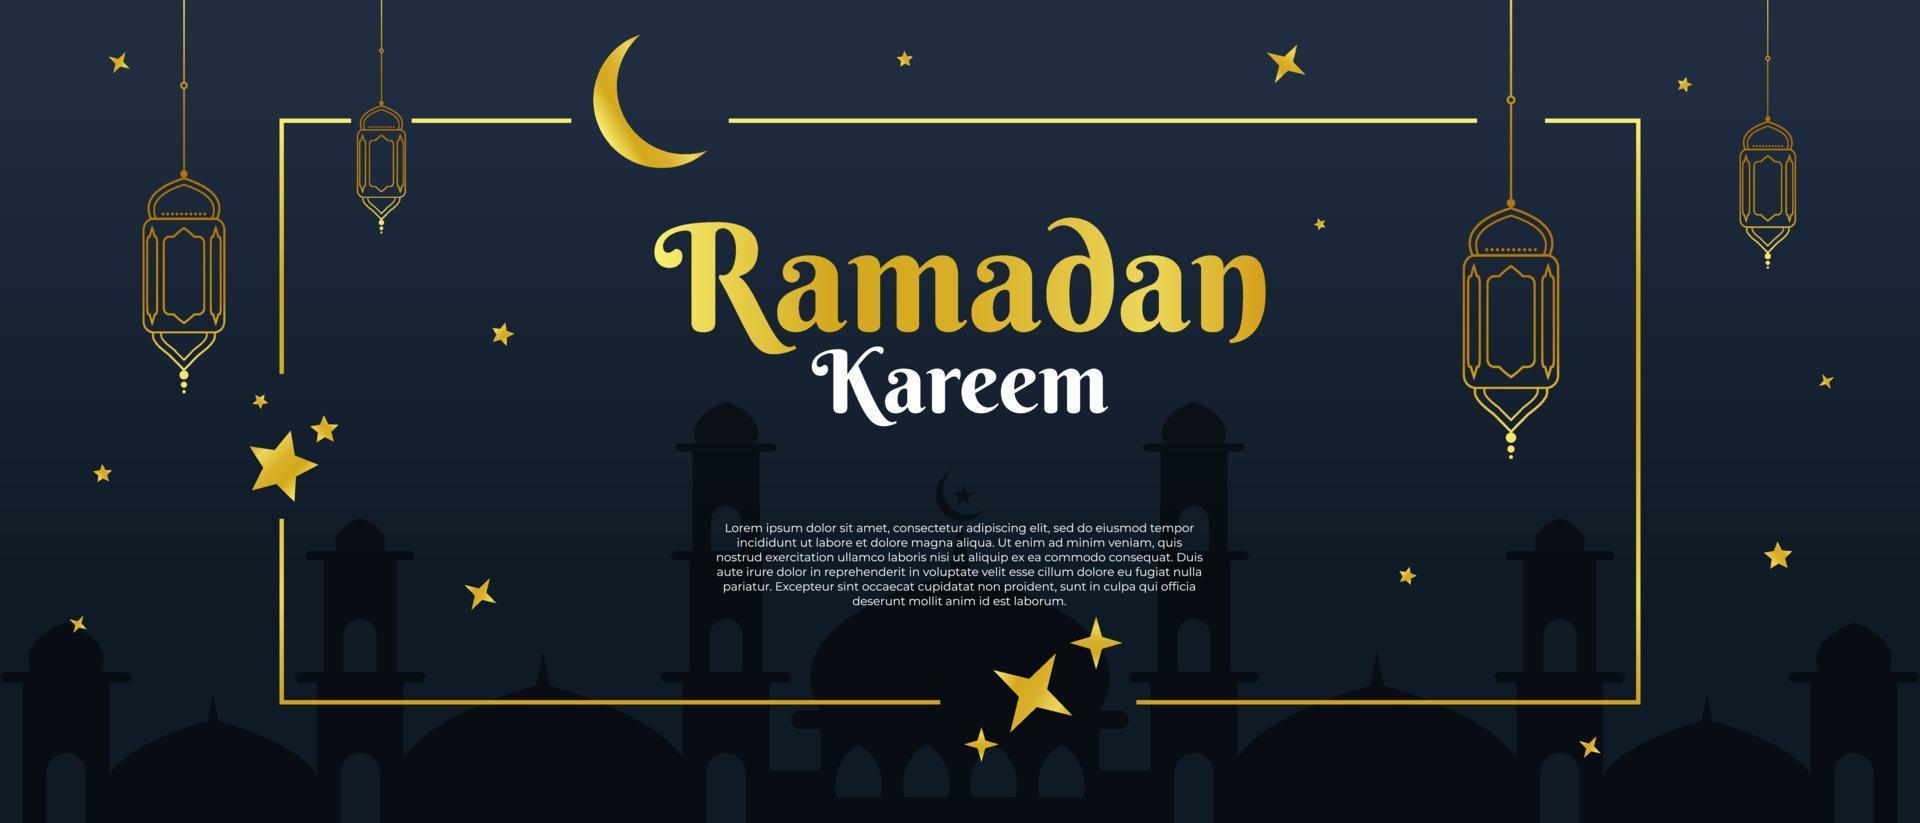 ramadan kareem o eid mubarak sfondo islamico per biglietto di auguri, banner, eventi o poster vettore